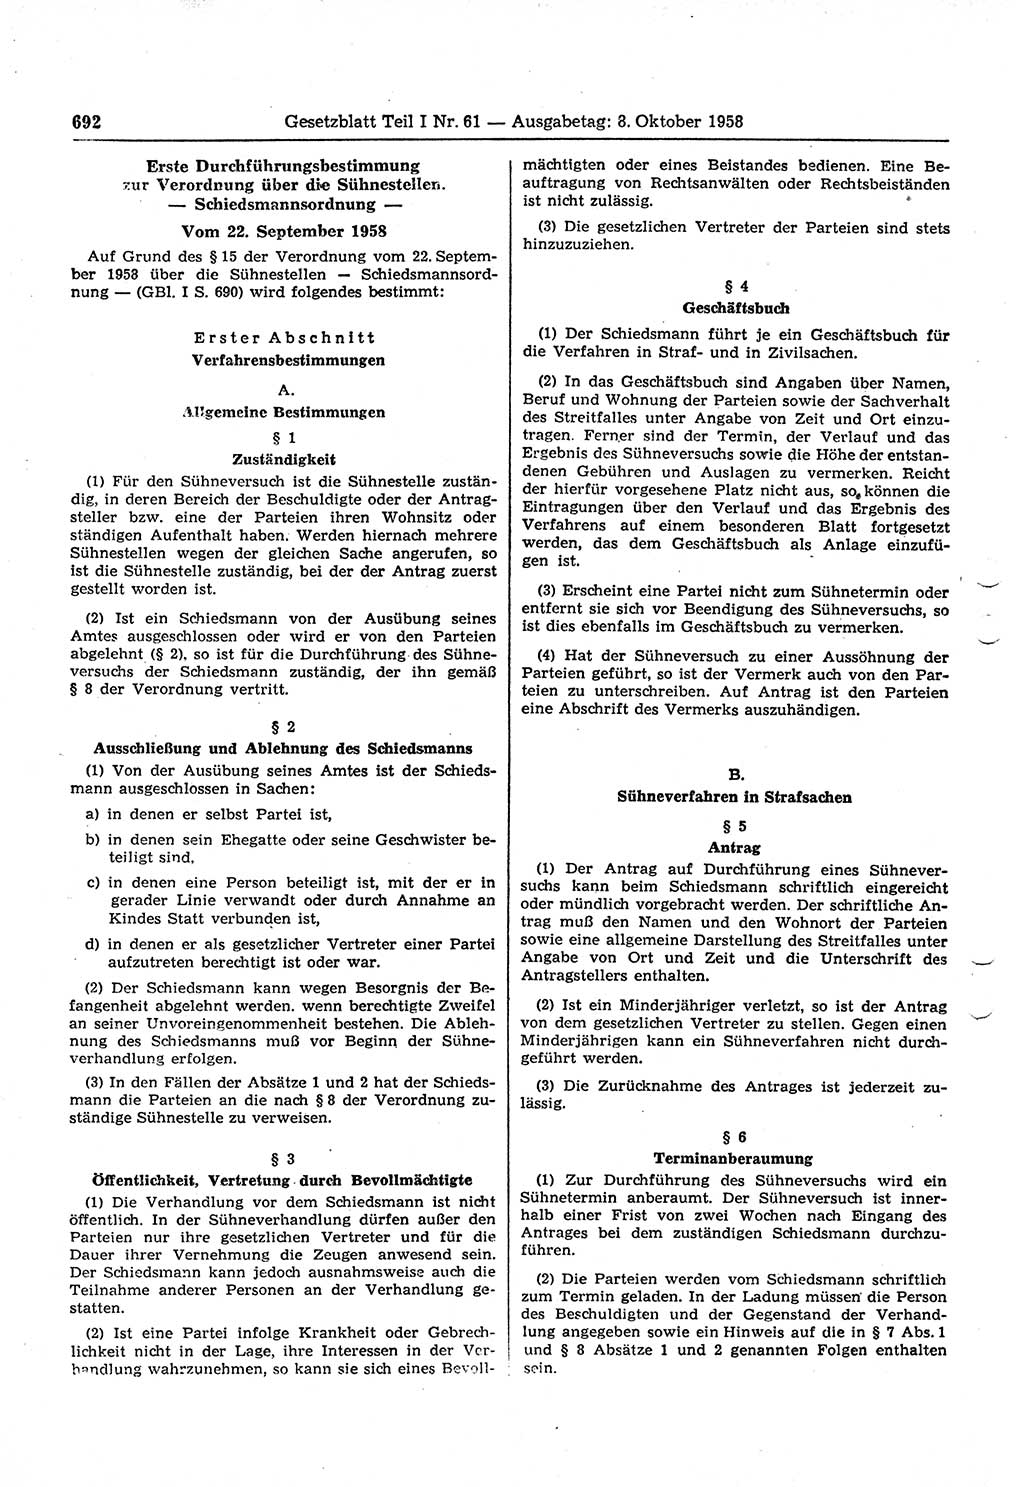 Gesetzblatt (GBl.) der Deutschen Demokratischen Republik (DDR) Teil Ⅰ 1958, Seite 692 (GBl. DDR Ⅰ 1958, S. 692)